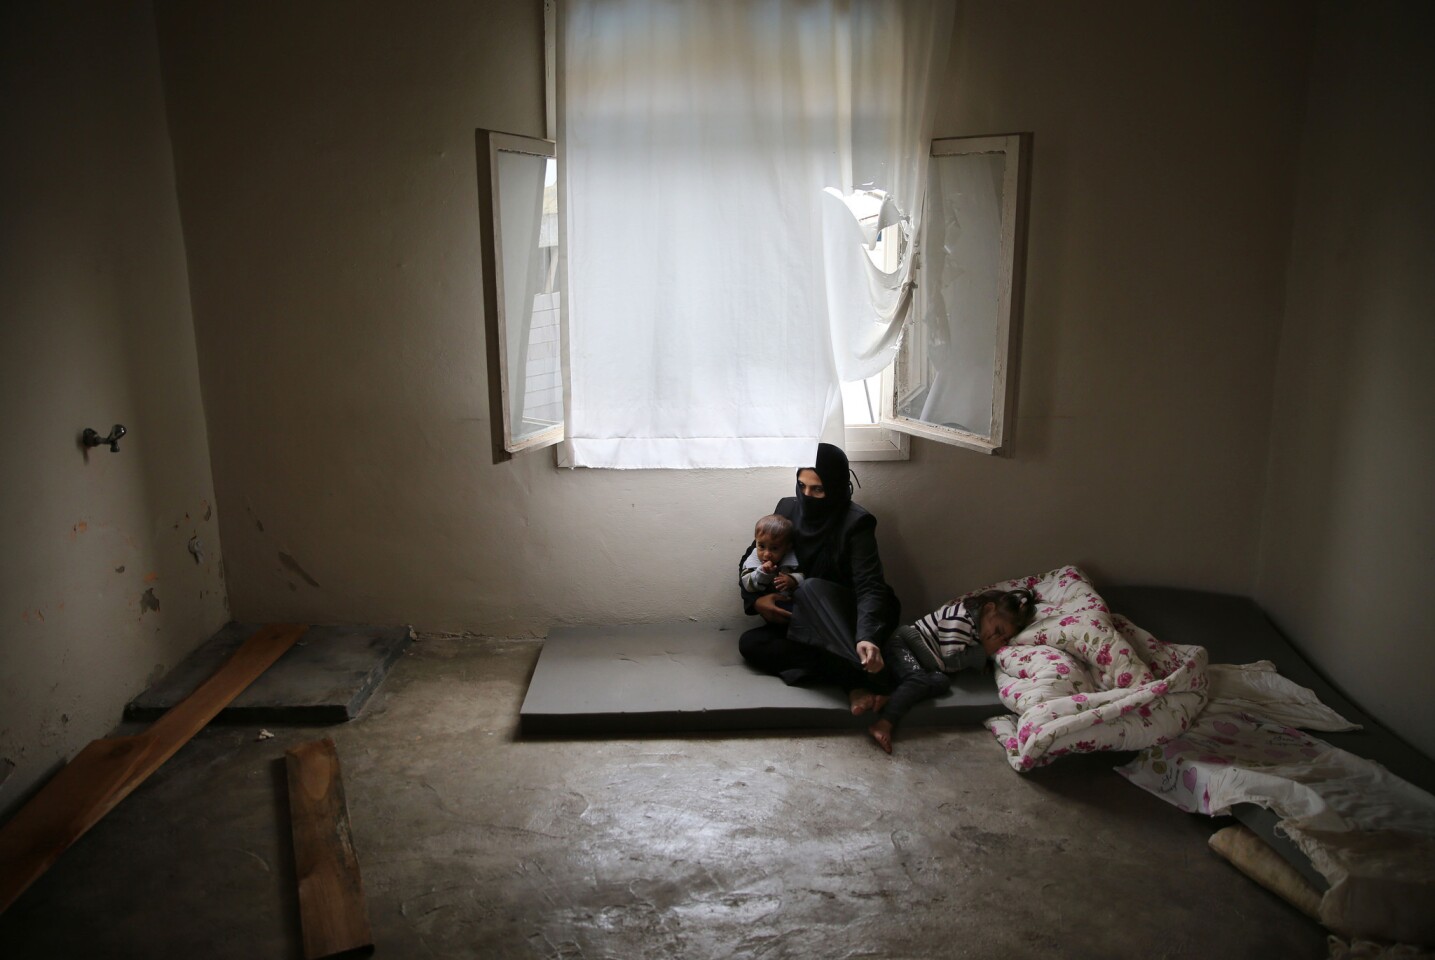 ARCHIVO - En esta fotografía de archivo del 23 de octubre de 2015, la refugiada siria Hind Salem, que huyó con su familia de la ciudad de Palmira en el centro de Siria debido a los bombardeos rusos, se sienta en el piso con sus hijos en su vivienda sin muebles, en la ciudad de Reyhanli, en la frontera turco-siria, en el sur de Turquía. "Para nada teníamos intención de salir de nuestro país. Pero los bombardeos rusos nos hicieron irnos", señaló. Un nuevo informe de un grupo defensor de los derechos humanos acusa a Rusia de utilizar municiones de racimo y bombas no dirigidas sobre áreas civiles en Siria en ataques que dice han provocado la muerte de cientos de personas. El informe de Amnistía Internacional difundido el miércoles 23 de diciembre de 2015 indica que ha habido un aumento en los reportes del uso de municiones de racimo en áreas blanco de las fuerzas rusas desde que Moscú ingresó formalmente al conflicto el 30 de septiembre. (Foto AP/Hussein Malla, archivo)